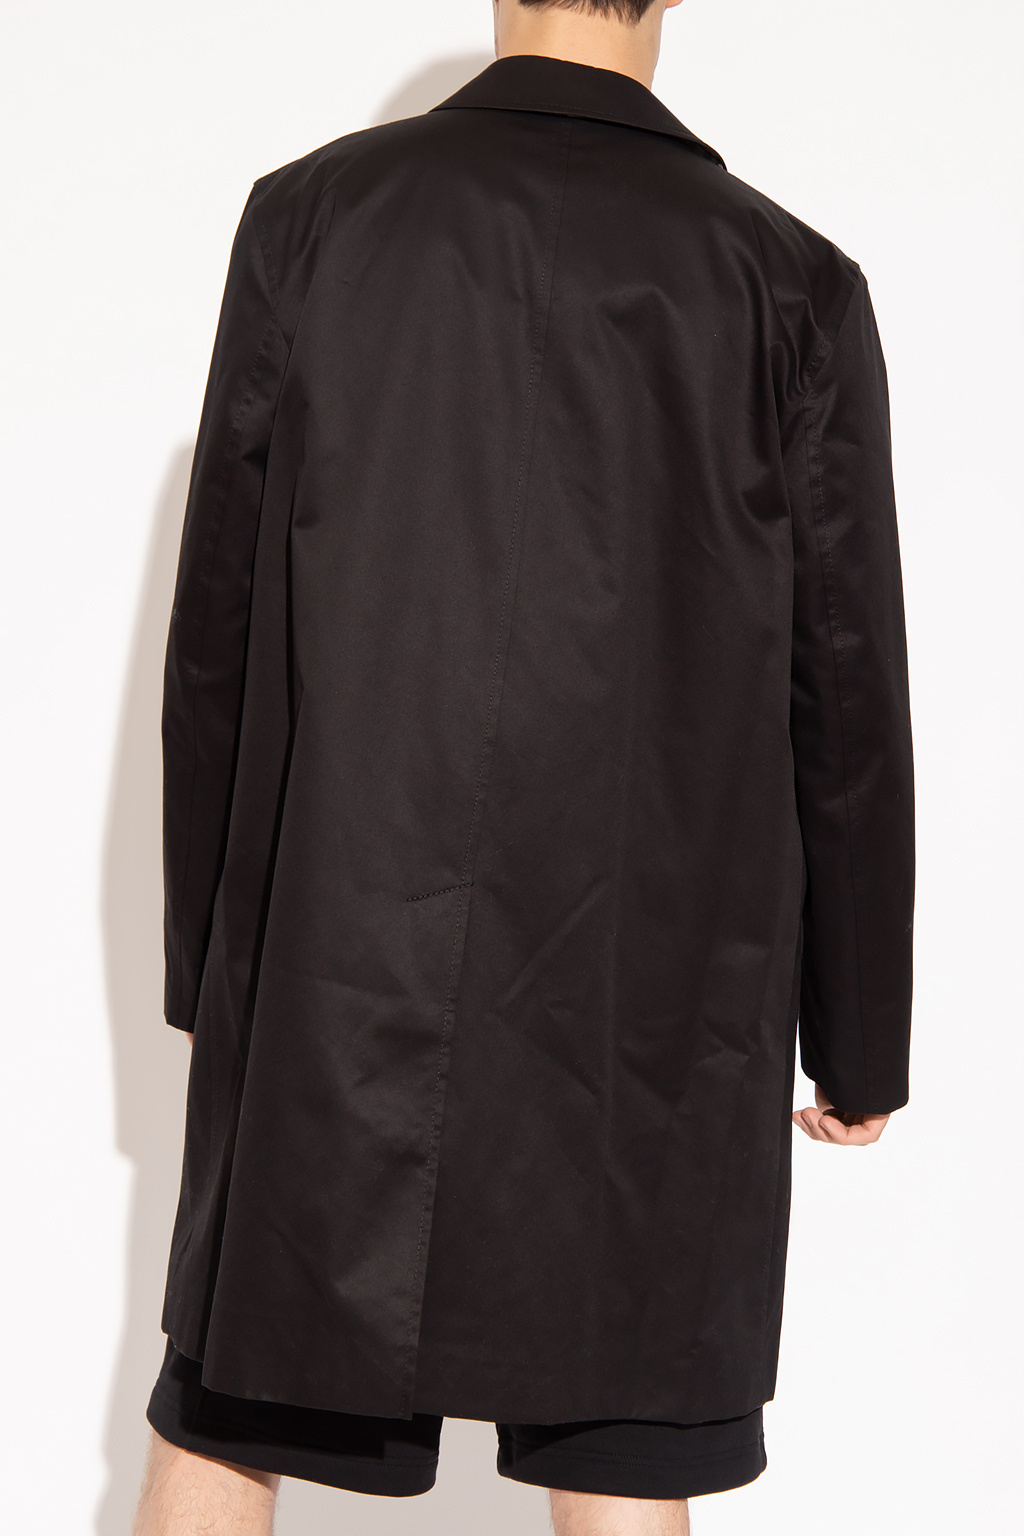 Burberry ‘Paddington’ coat | Men's Clothing | Vitkac